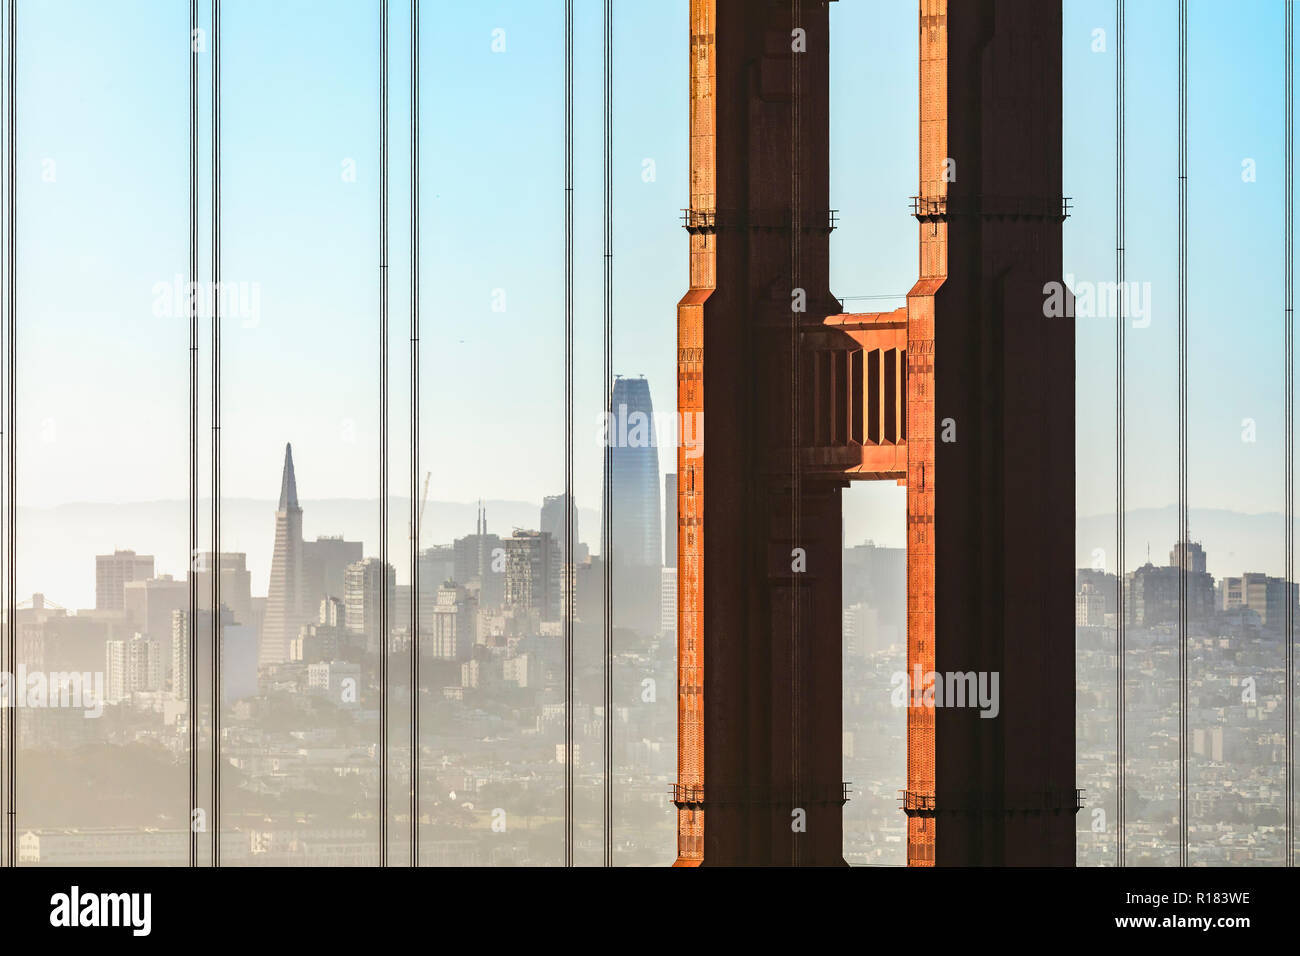 Die Stadt von San Francisco, Kalifornien ist durch die Seilzüge zur Aufhängung und ein Turm der legendären Golden Gate Bridge auf einer diesigen Morgen gesehen. Stockfoto